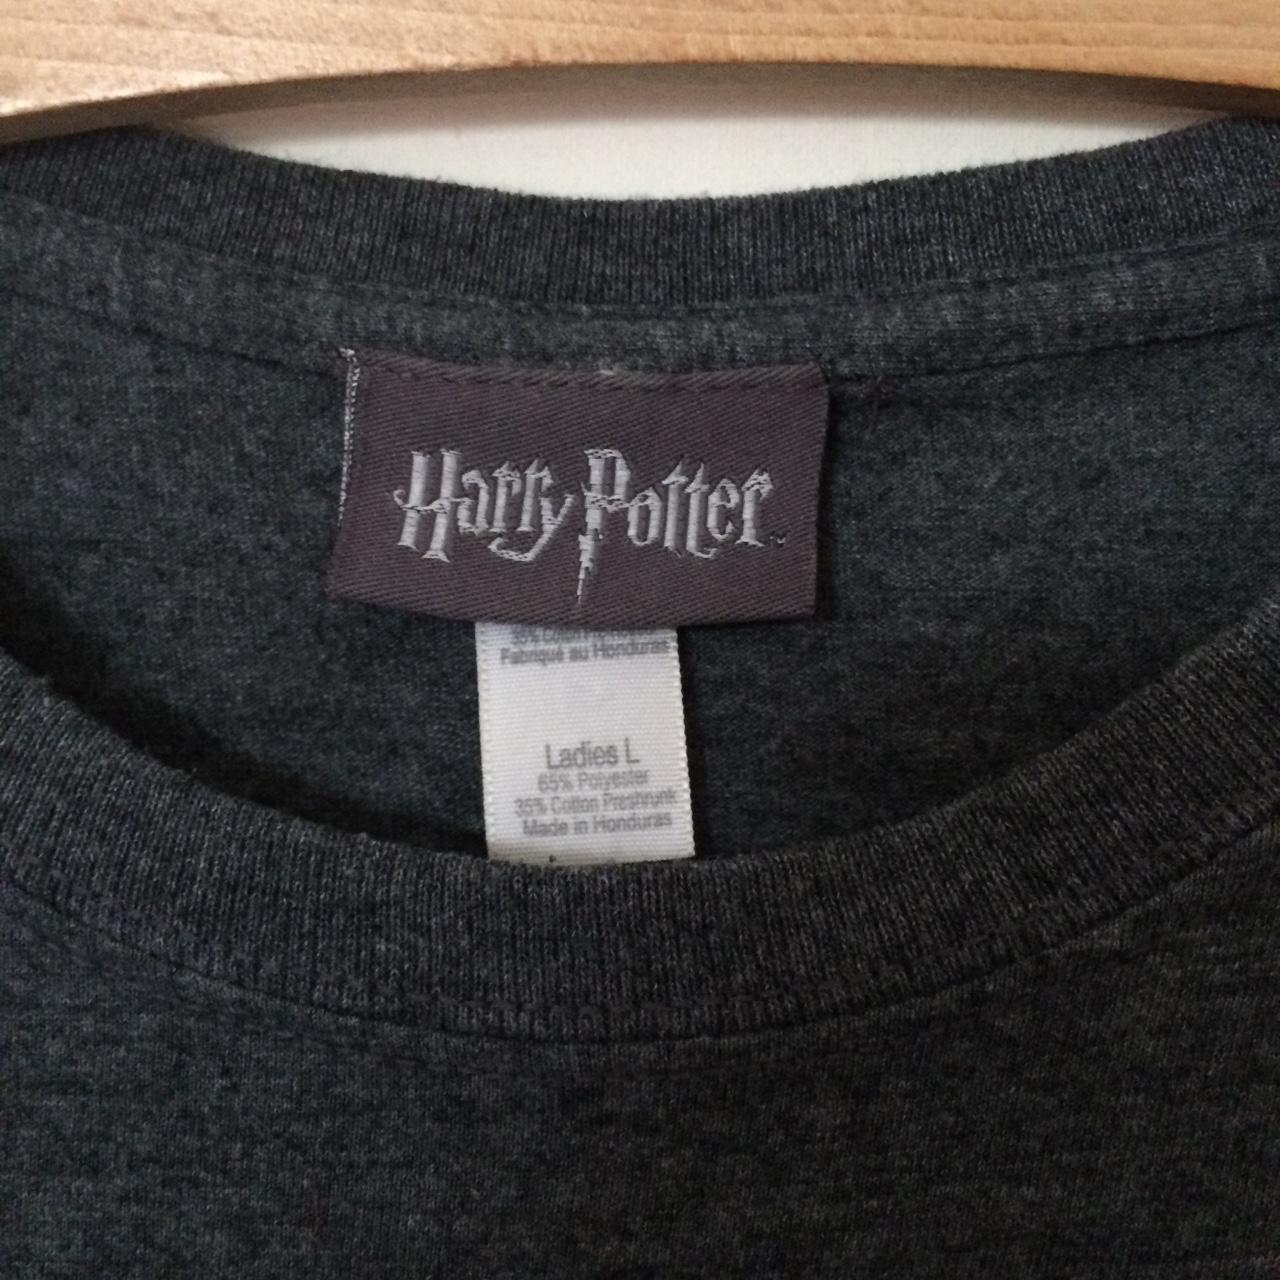 Official Harry Potter Slytherin Hogwarts school of... - Depop